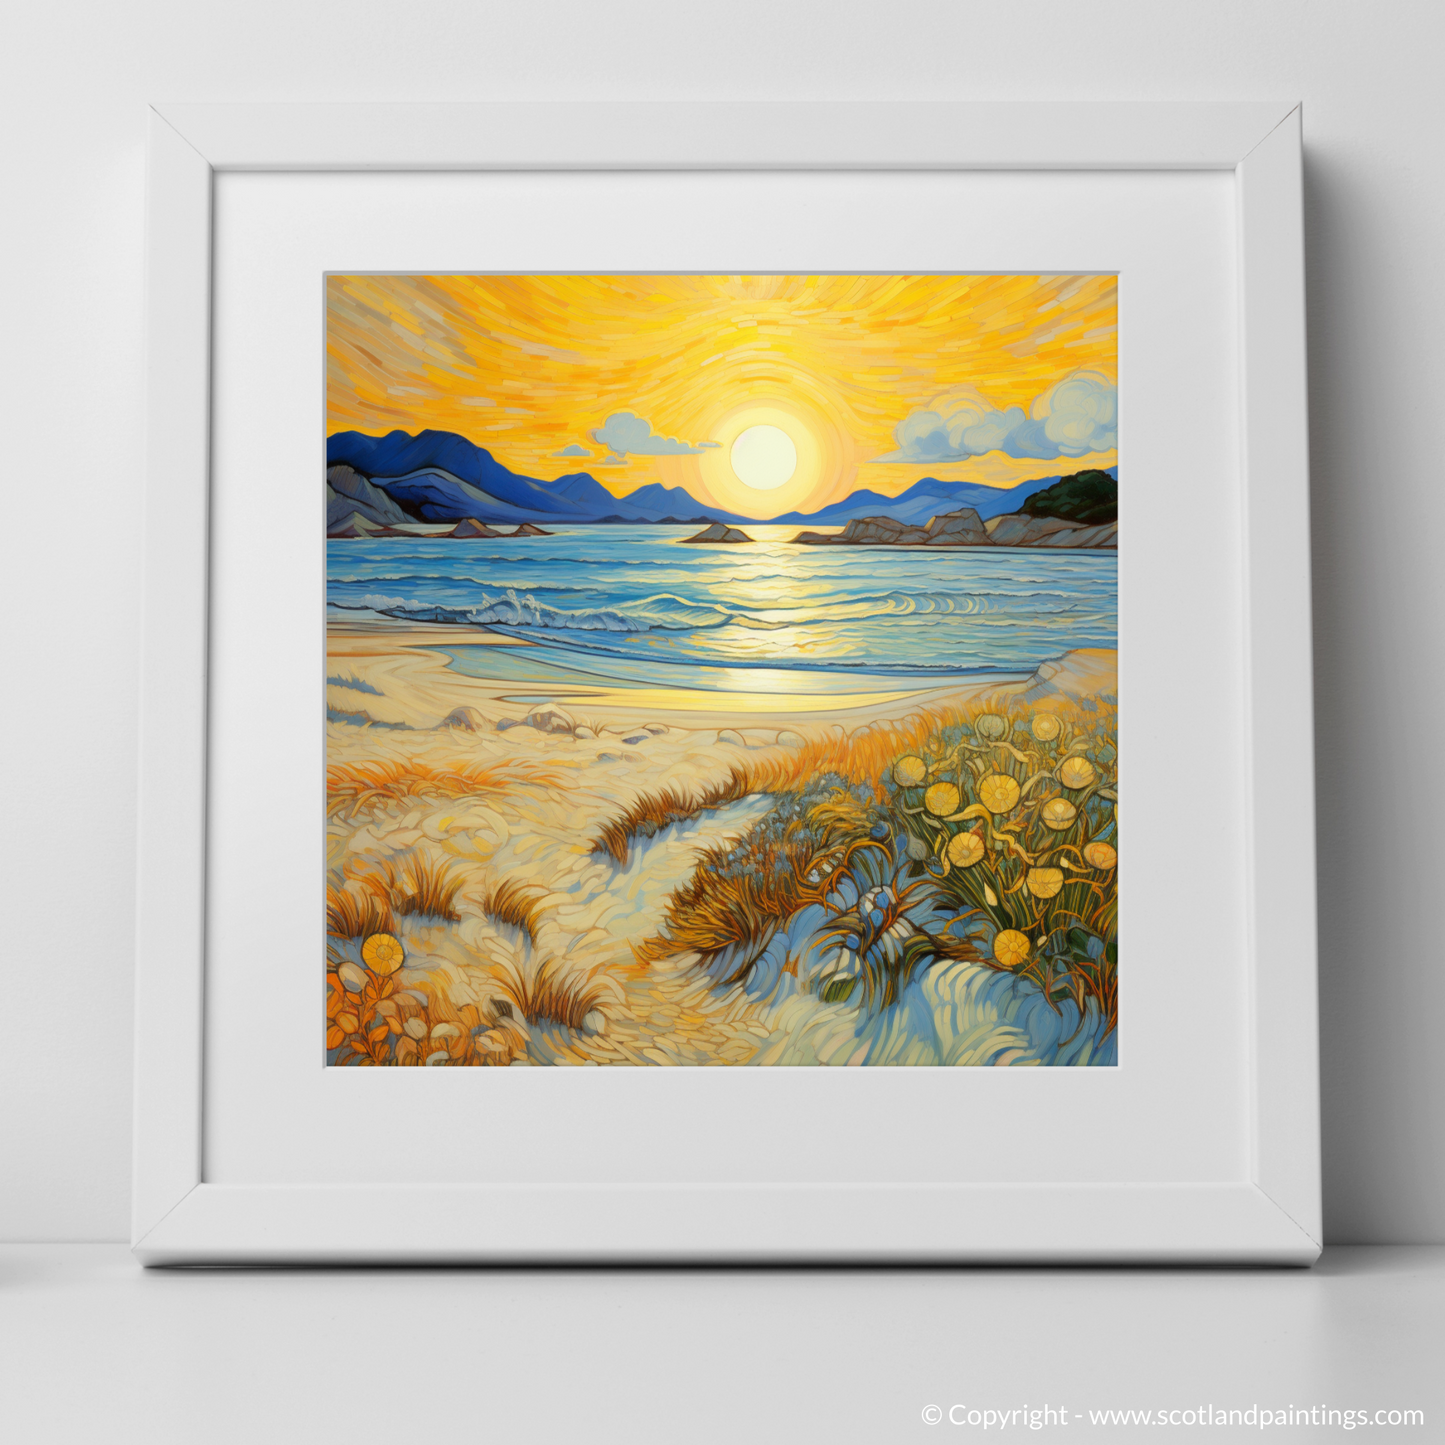 Sunset Serenade at Silver Sands of Morar